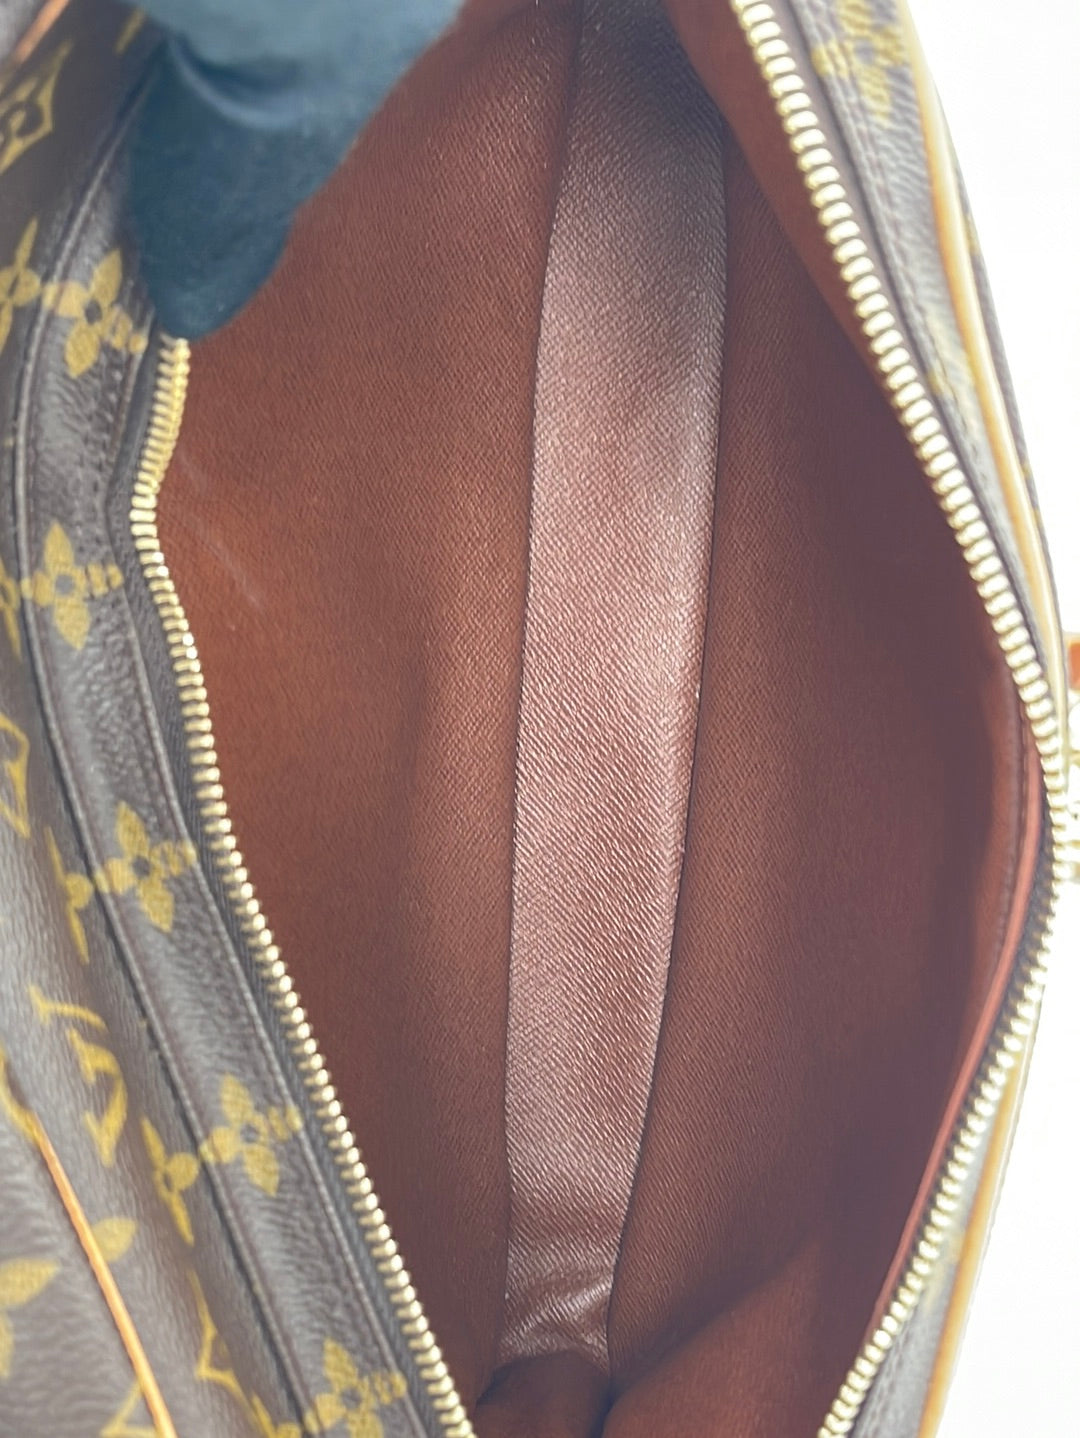 Vintage Louis Vuitton Nile Monogram Bag AR0031 062723 $200 OFF